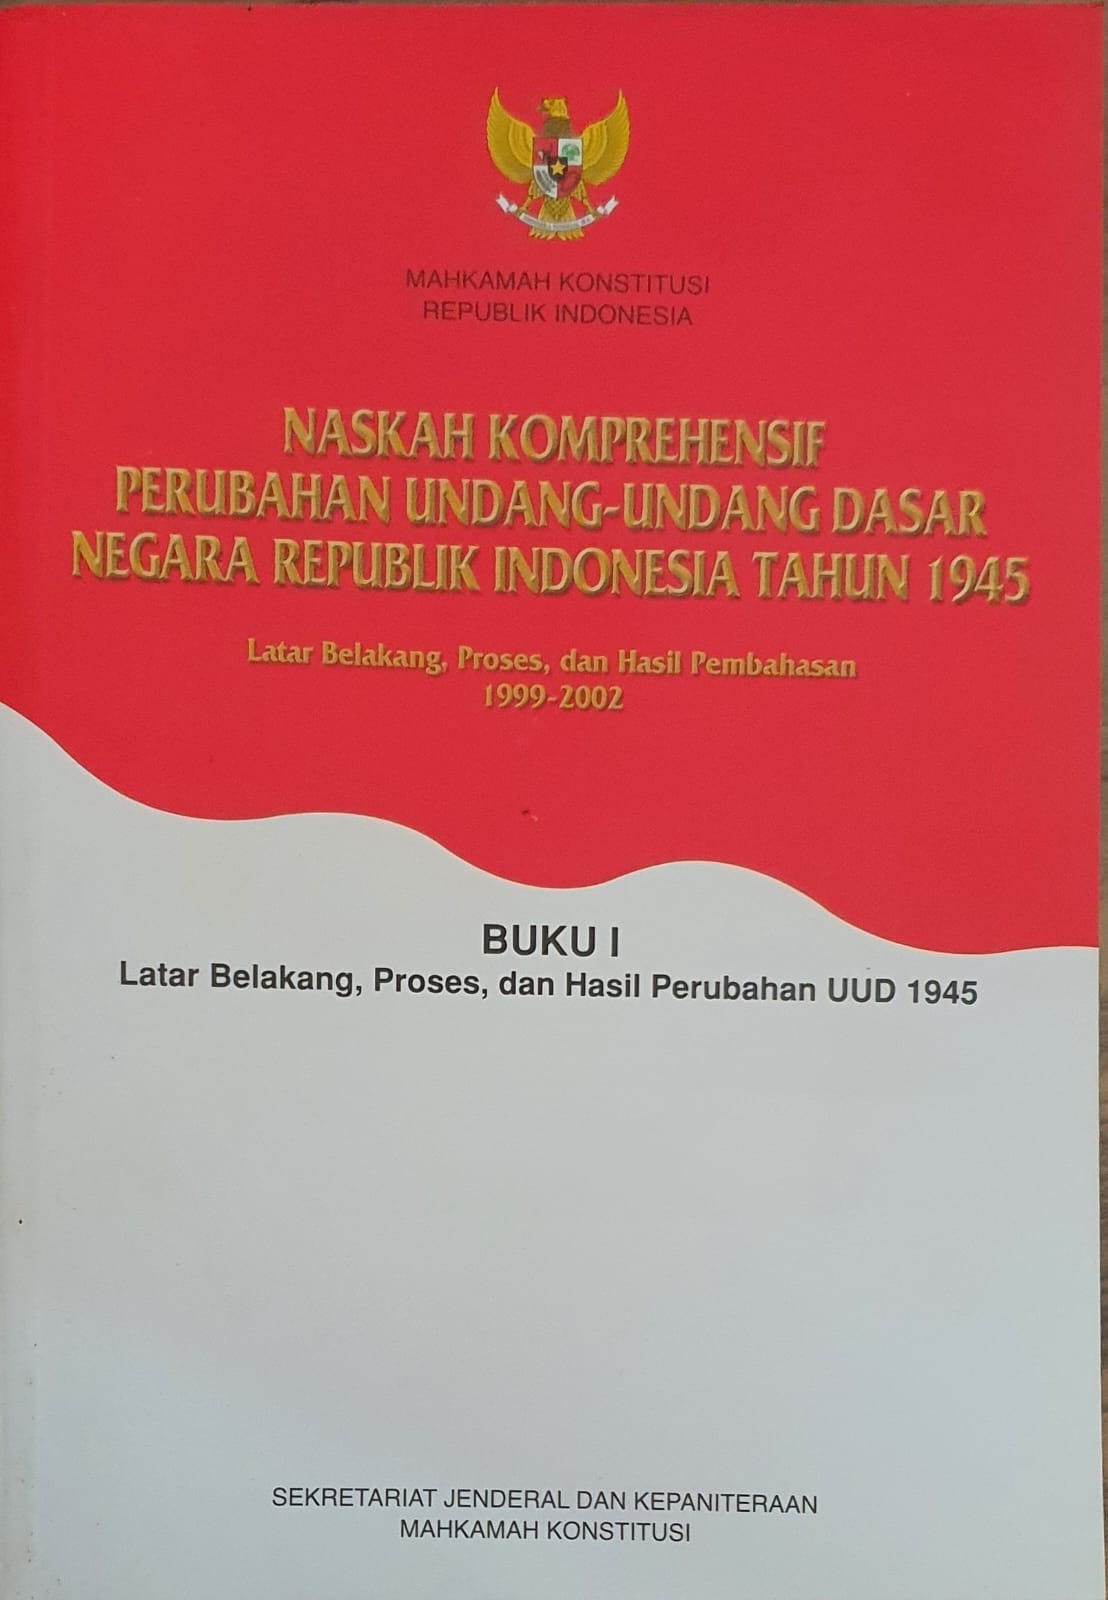 Naskah Komprehensif Perubahan Undang-Undang Dasar Negara Republik Indonesia Tahun 1945 Buku I Latar Belakang, Proses, dan Hasil Perubahan UUD 1945